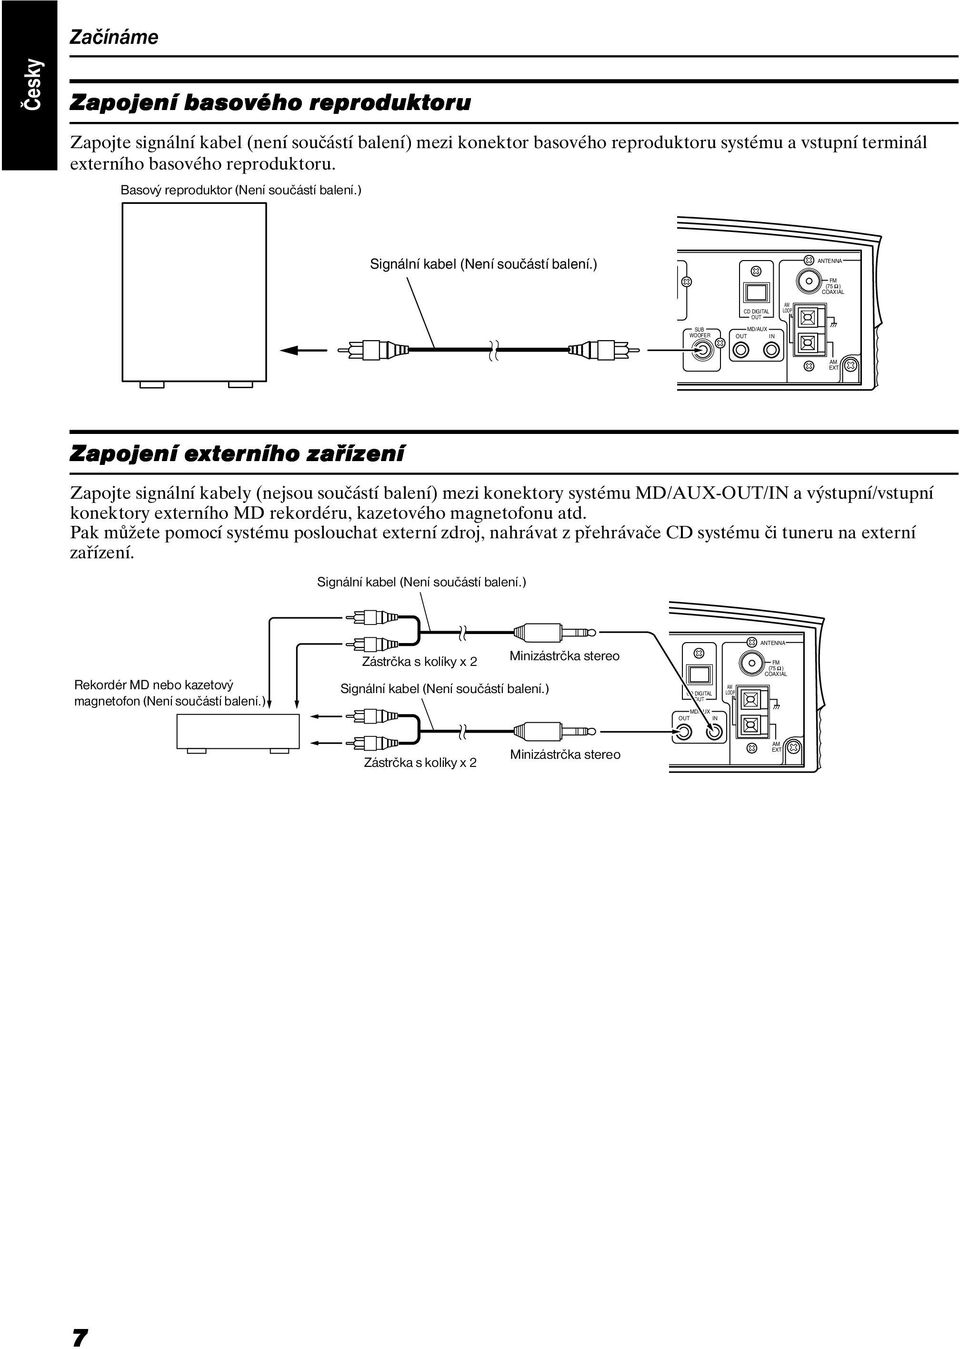 ) ANTENNA FM (75 ) COAXIAL CD DIGITAL OUT AM LOOP SUB WOOFER MD/AUX OUT IN AM EXT Zapojení externího zařízení Zapojte signální kabely (nejsou součástí balení) mezi konektory systému MD/AUX-OUT/IN a